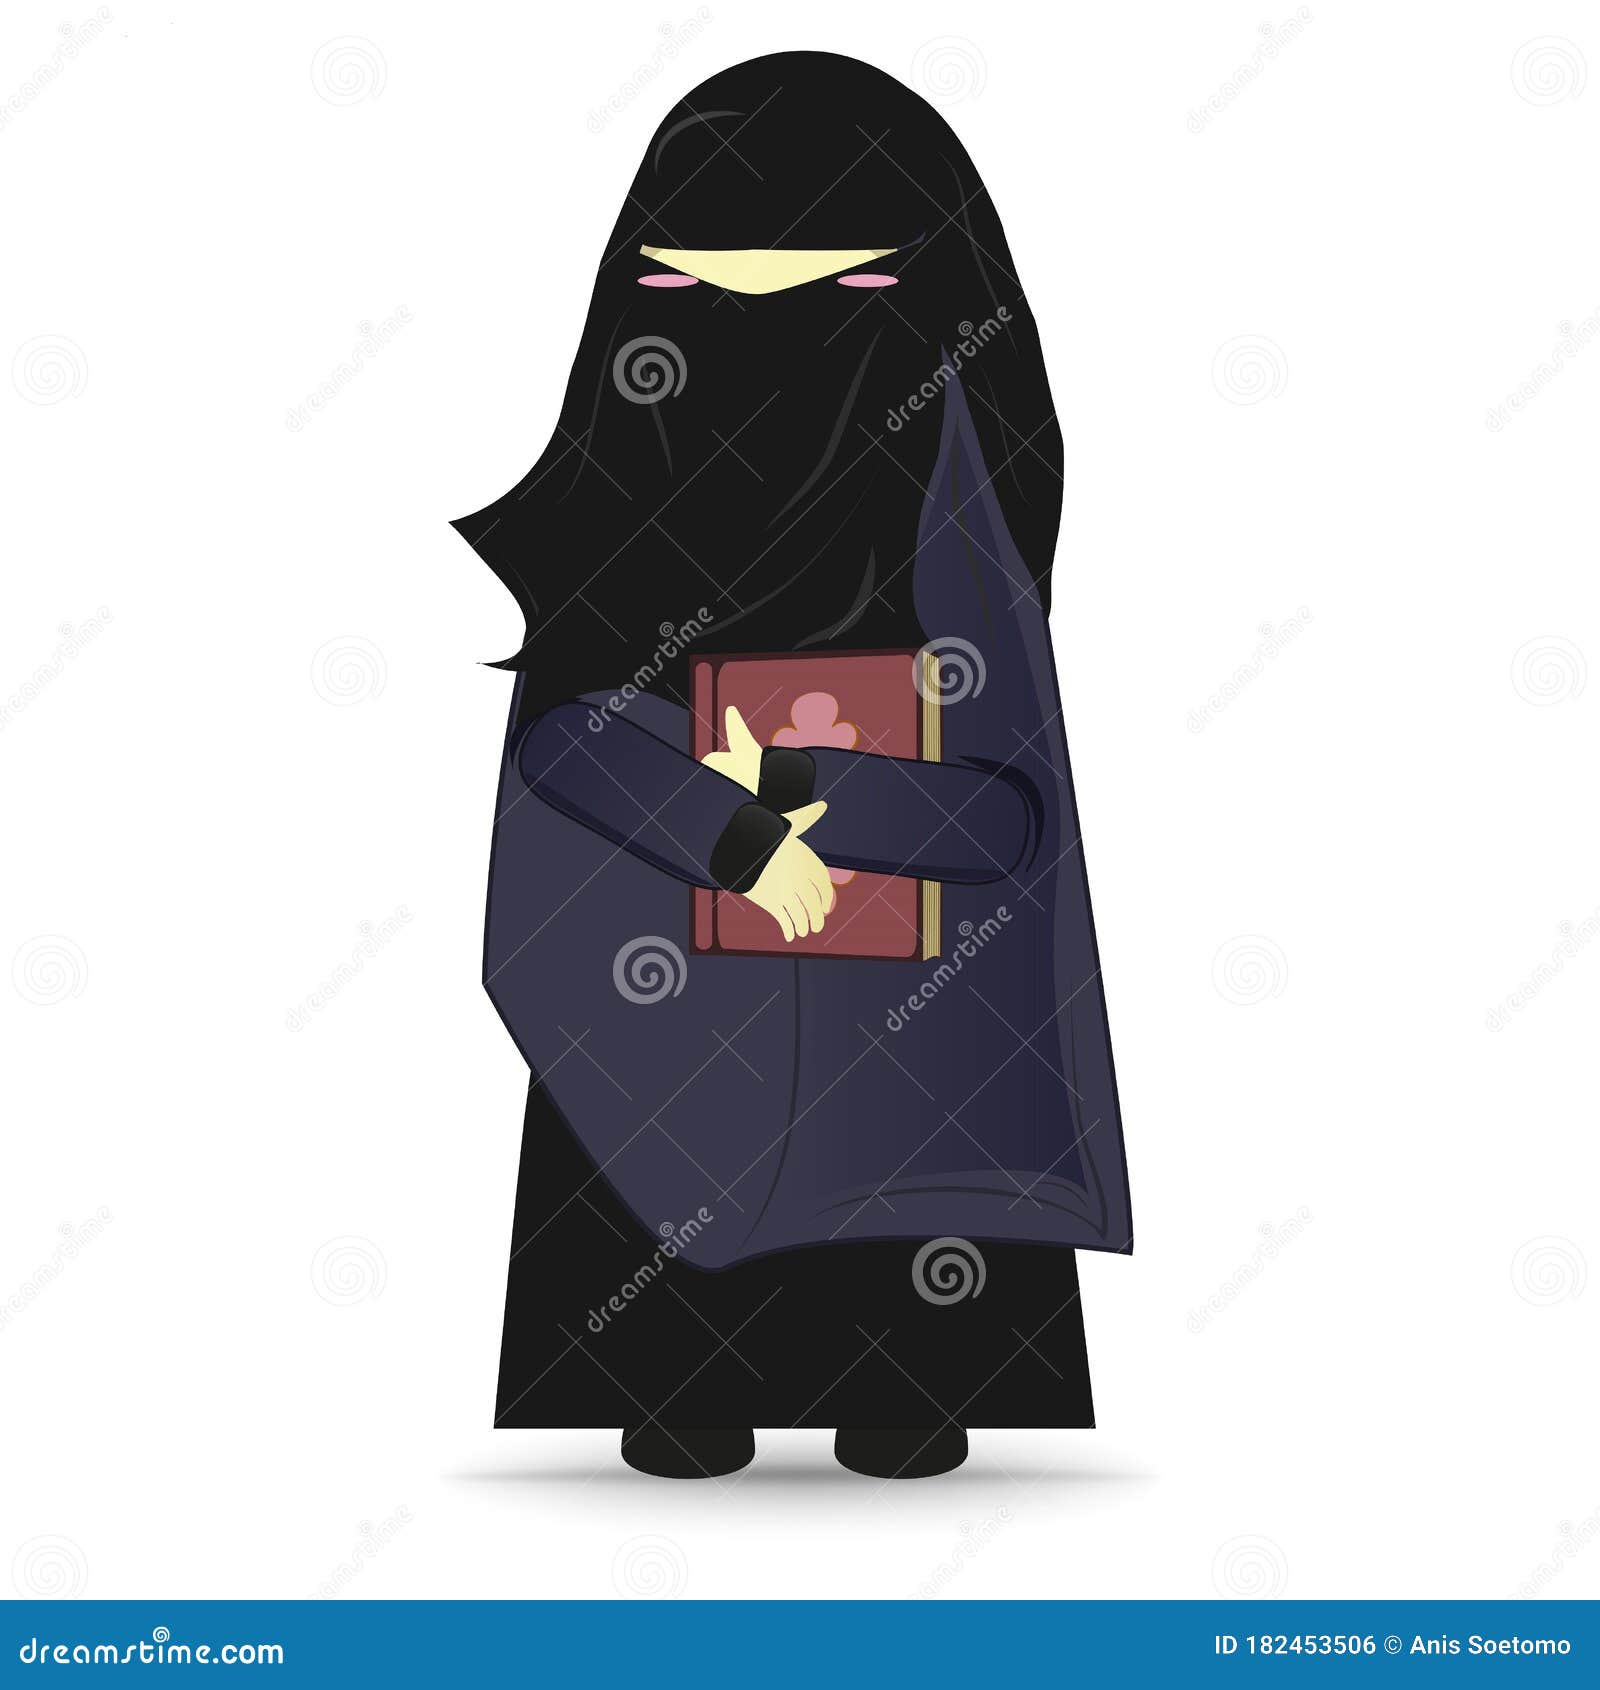 Cartoon Hijab Cartoon Hijab Cartoon Hijab Cartoon Hijab Cartoon Incest Porn Hijab